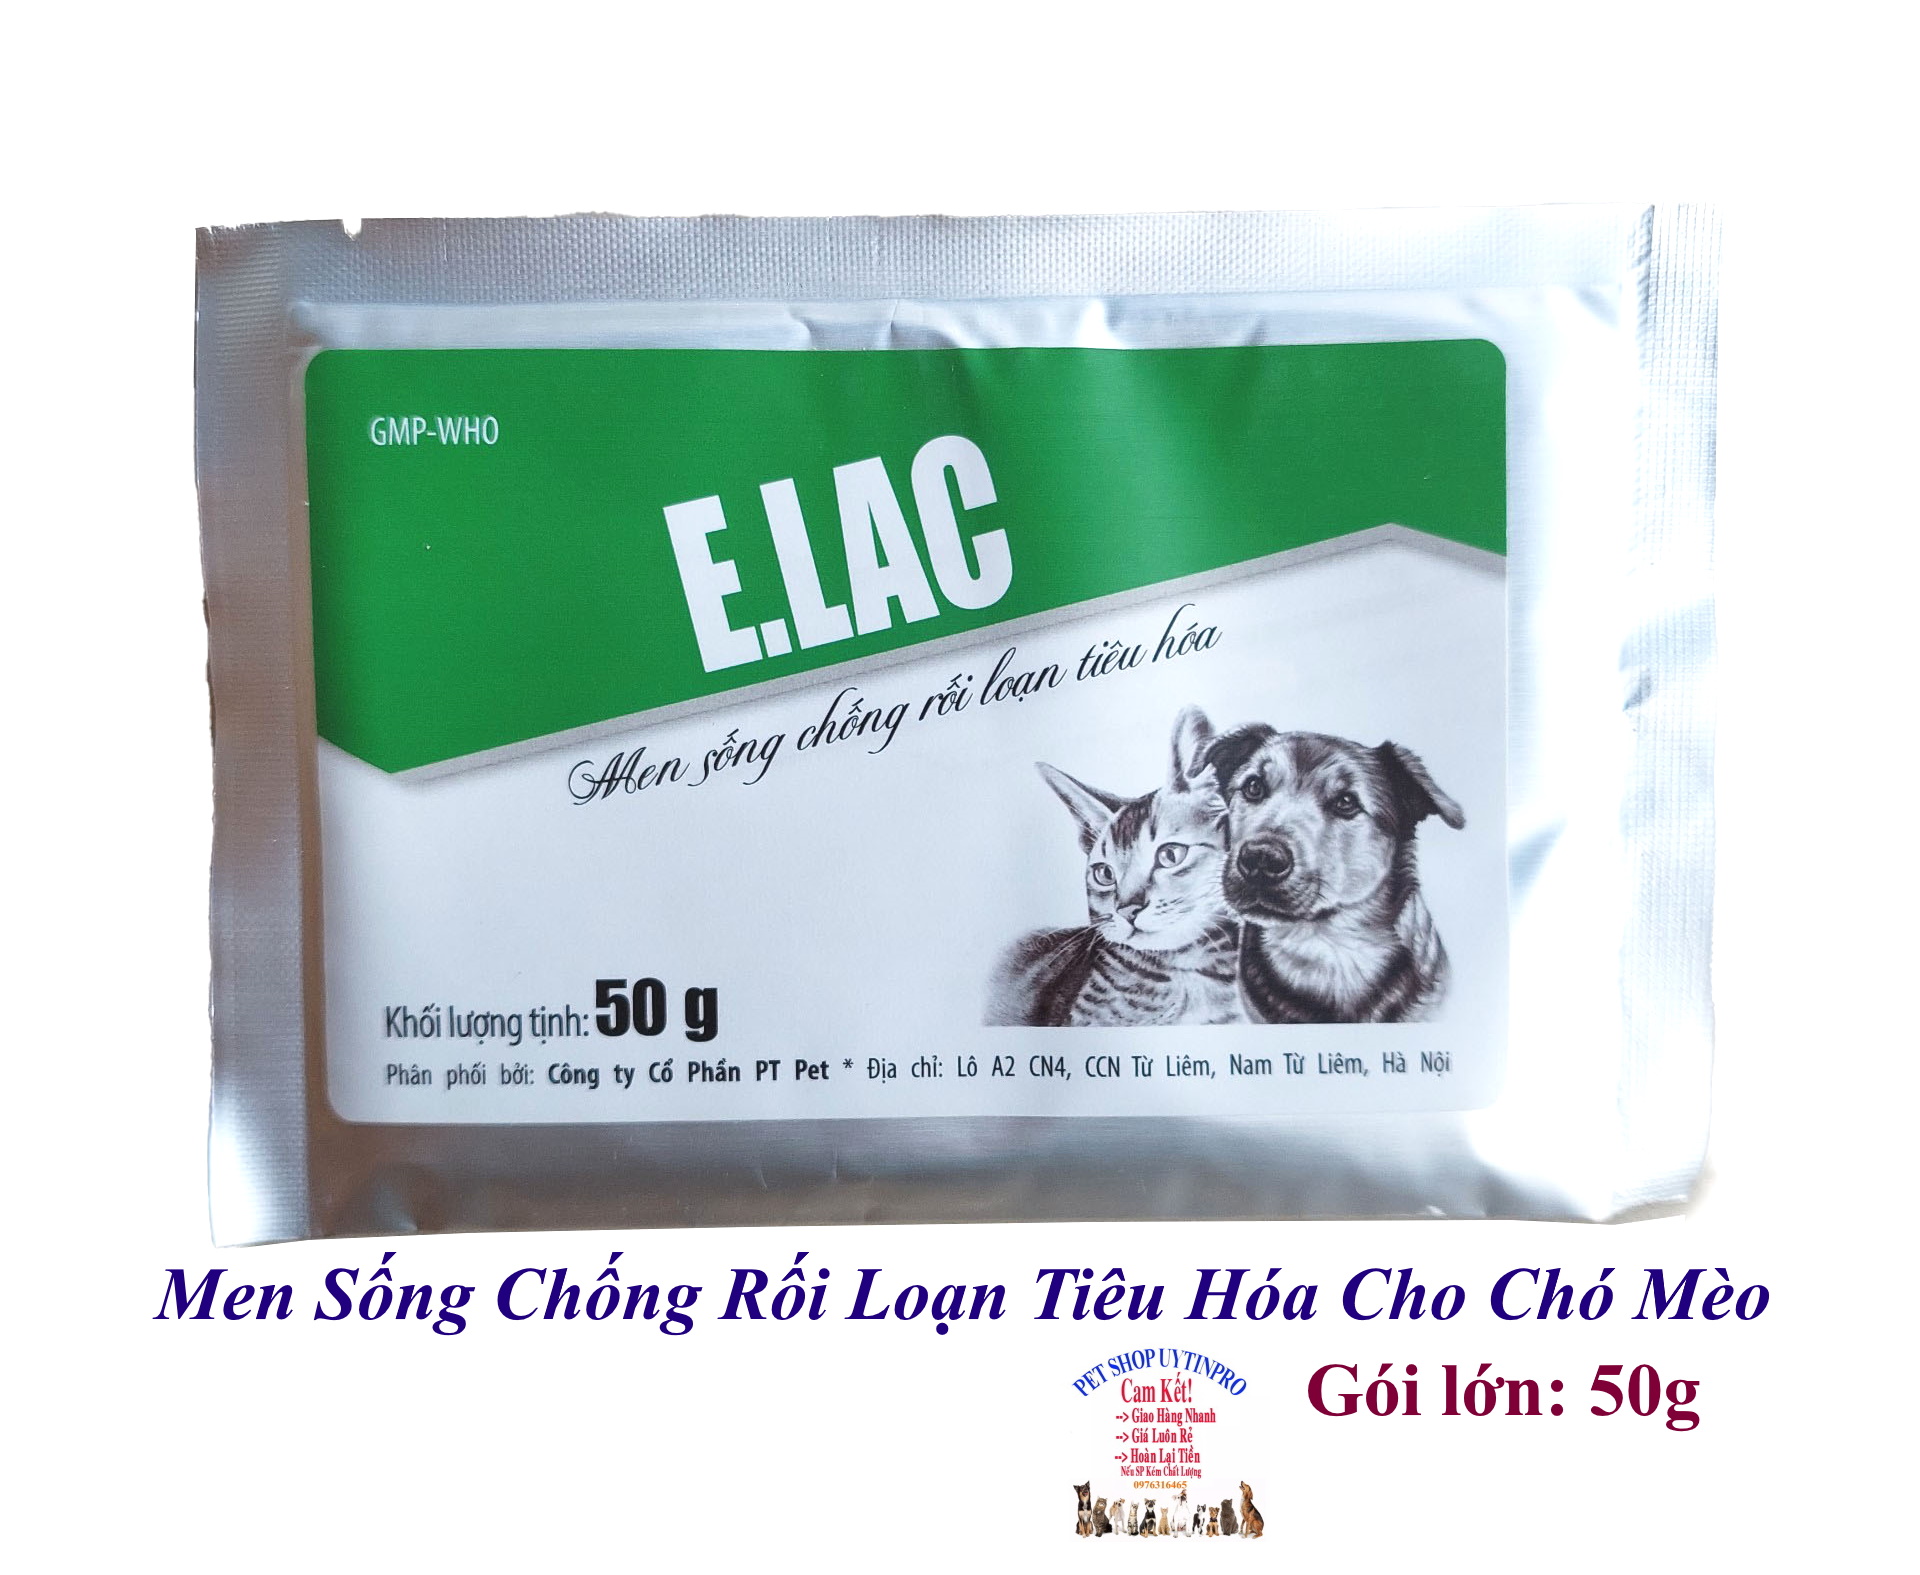 Men sống chống rối loạn tiêu hóa cho Chó Mèo E.Lac Gói 50g Bổ sung vi khuẩn Chống tiêu chảy có lợi Sx tại Việt Nam